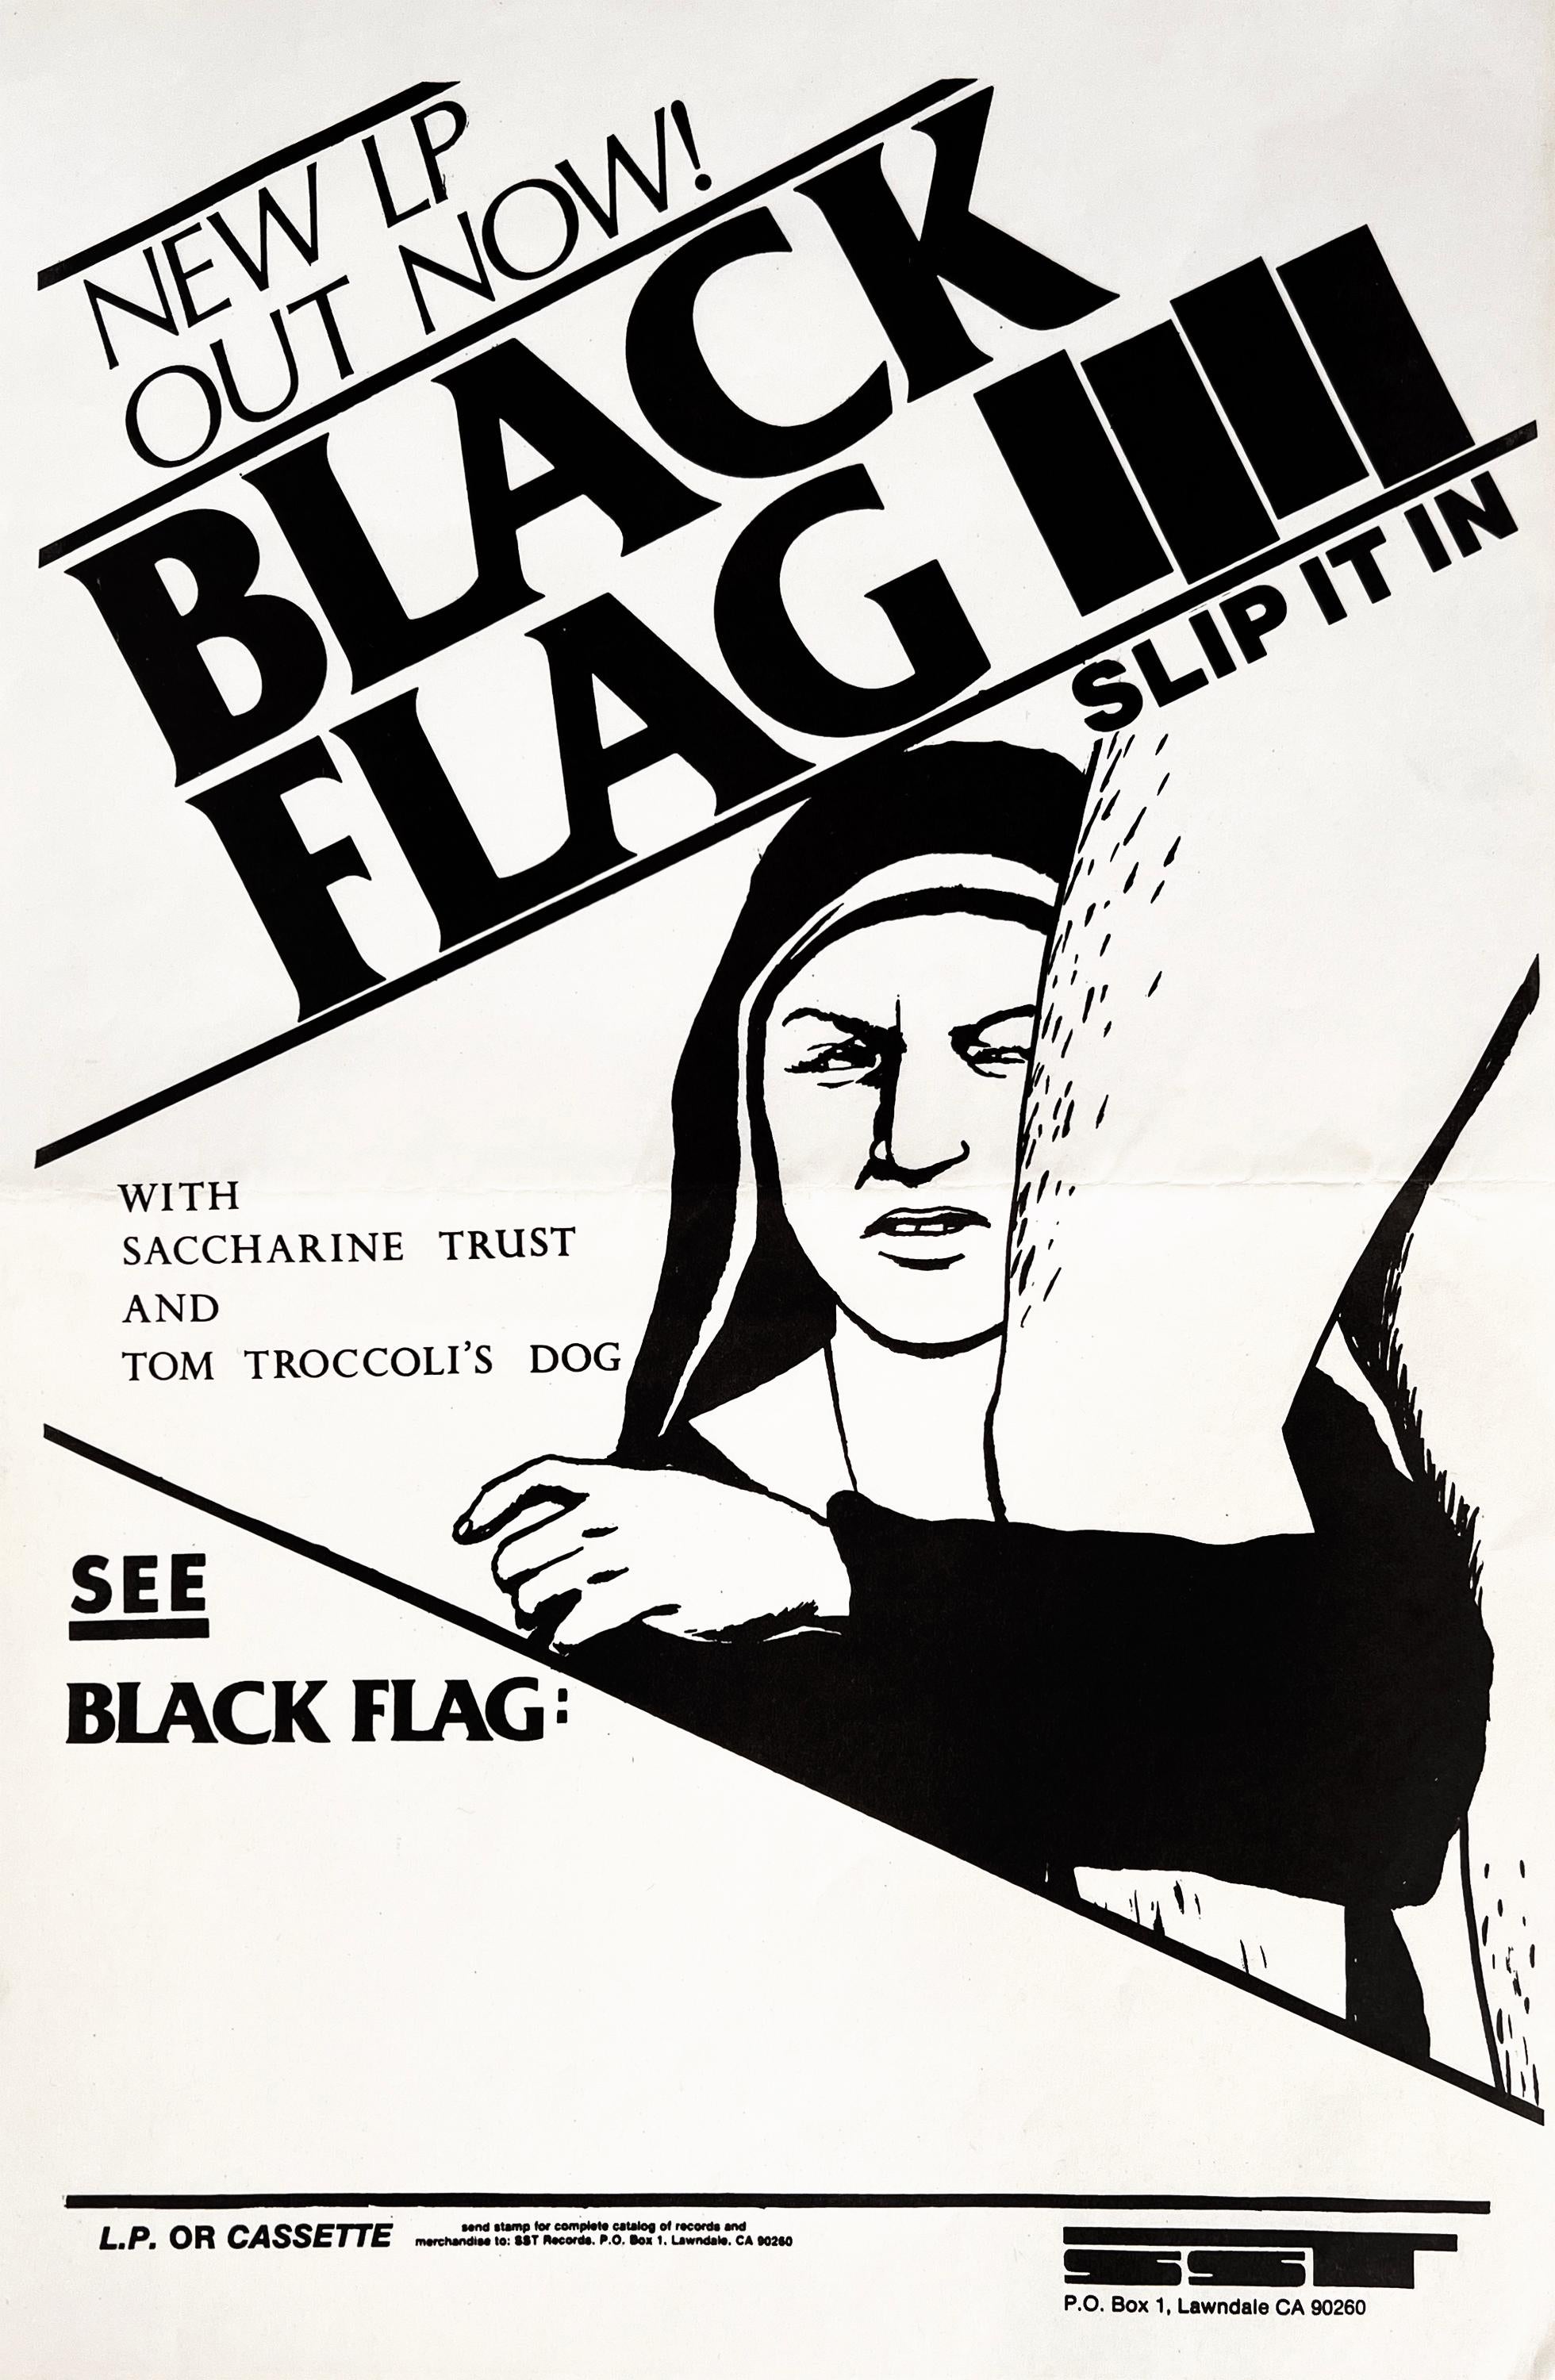 Raymond Pettibon Schwarze Flagge:
Seltener, von Raymond Pettibon illustrierter Werbeflyer von Black Flag aus dem Jahr 1984, mit dem die Veröffentlichung des Black Flag-Albums "Slip It In" beworben wurde.

Offsetdruck; 17 x 11 Zoll. 1984.
Zustand: